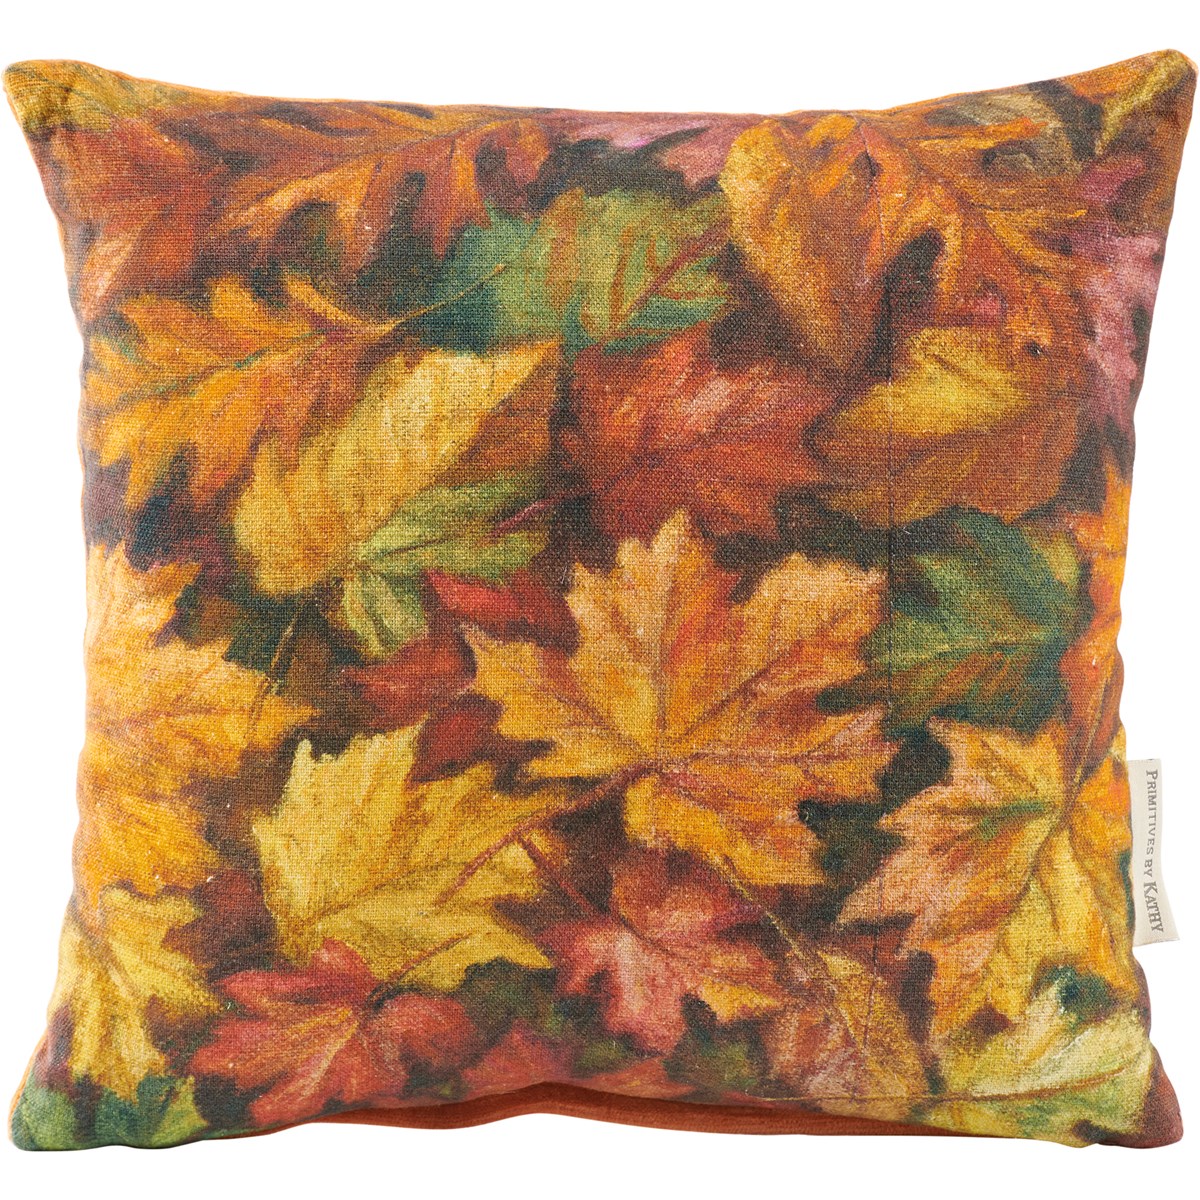 Pillow - Fall Leaves - 12" x 12" - Cotton, Velvet, Zipper